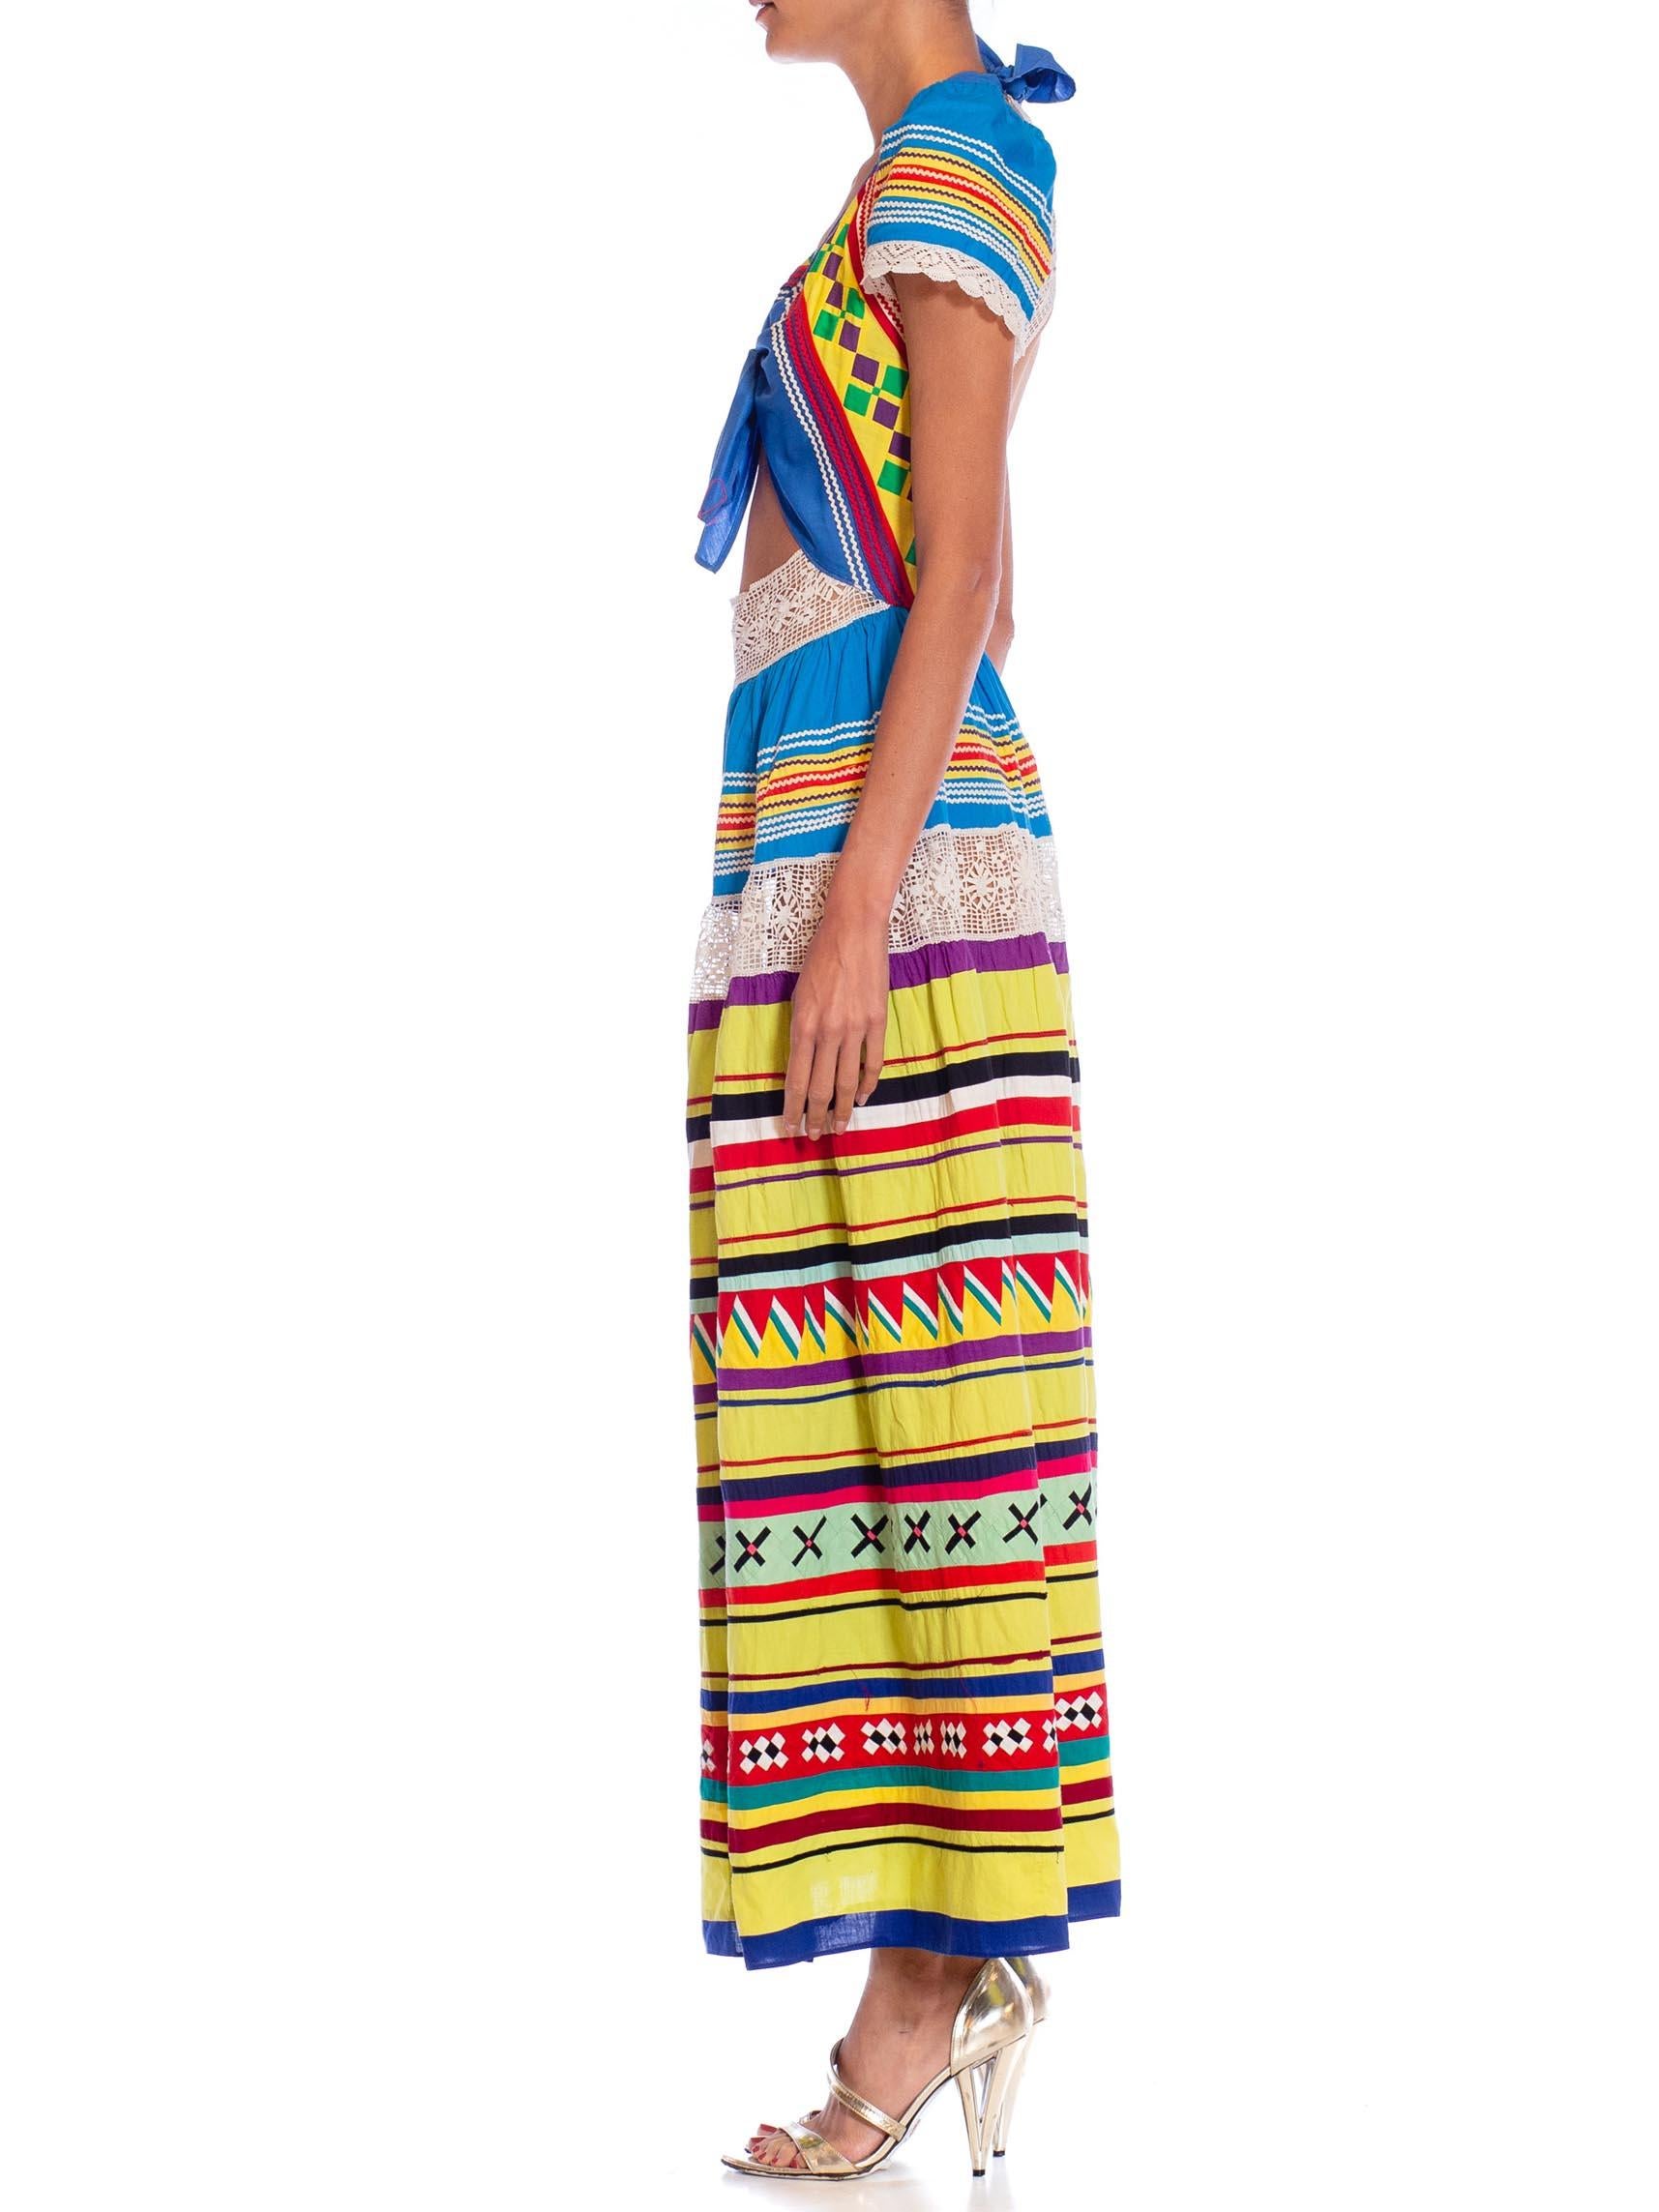 Dieses Kleid ist aus Vintage-Stücken aus den 1940er, 50er und 70er Jahren gefertigt. Ursprünglich wurde es vom Stamm der Seminolen in Florida hergestellt und an Touristen verkauft, die Florida in den frühen Tagen besuchten. In unserem Atelier in